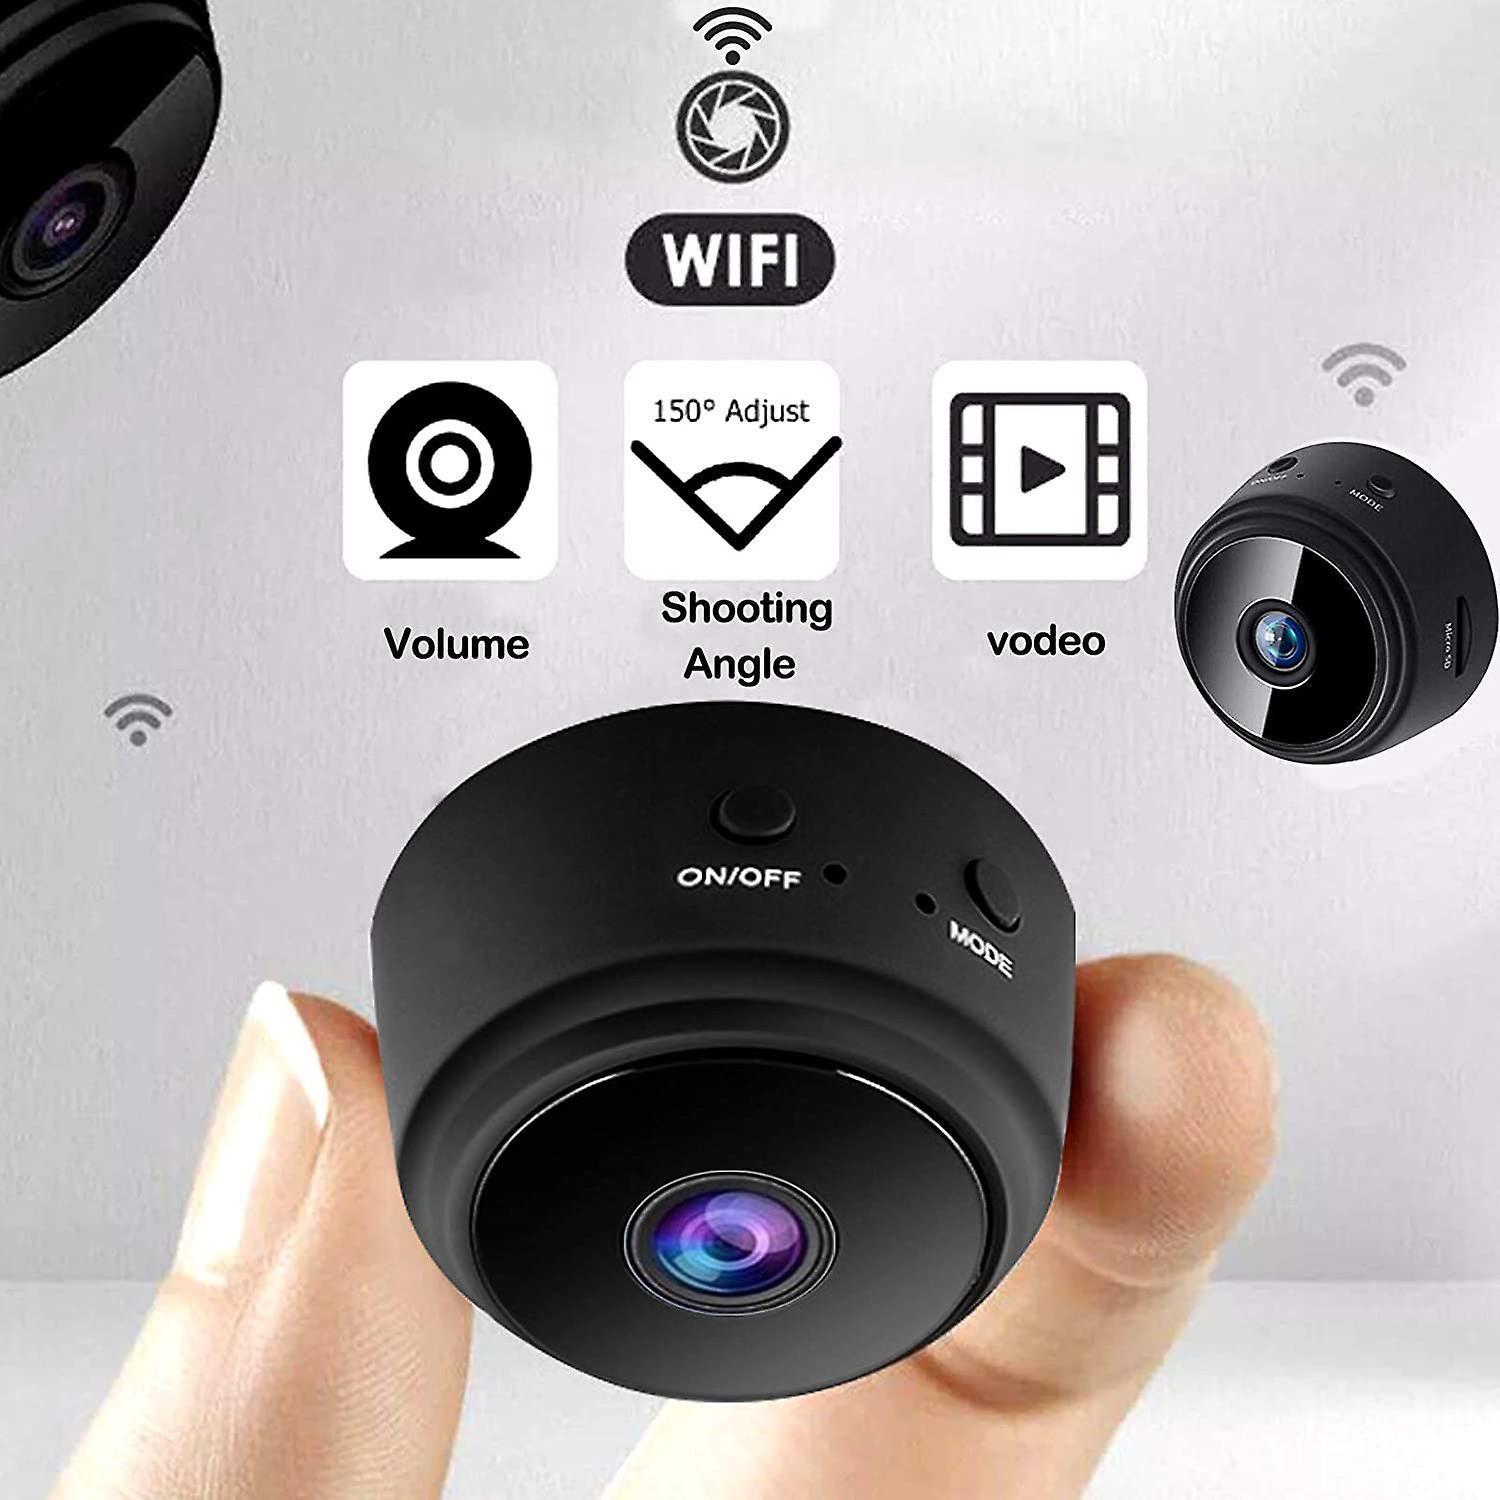 كاميرا مراقبه صغيره - كاميرا خفية مغناطيسية A9 WiFi Mini Security Camera بدقة HD 1080P - cG9zdDoyOTg0ODg=